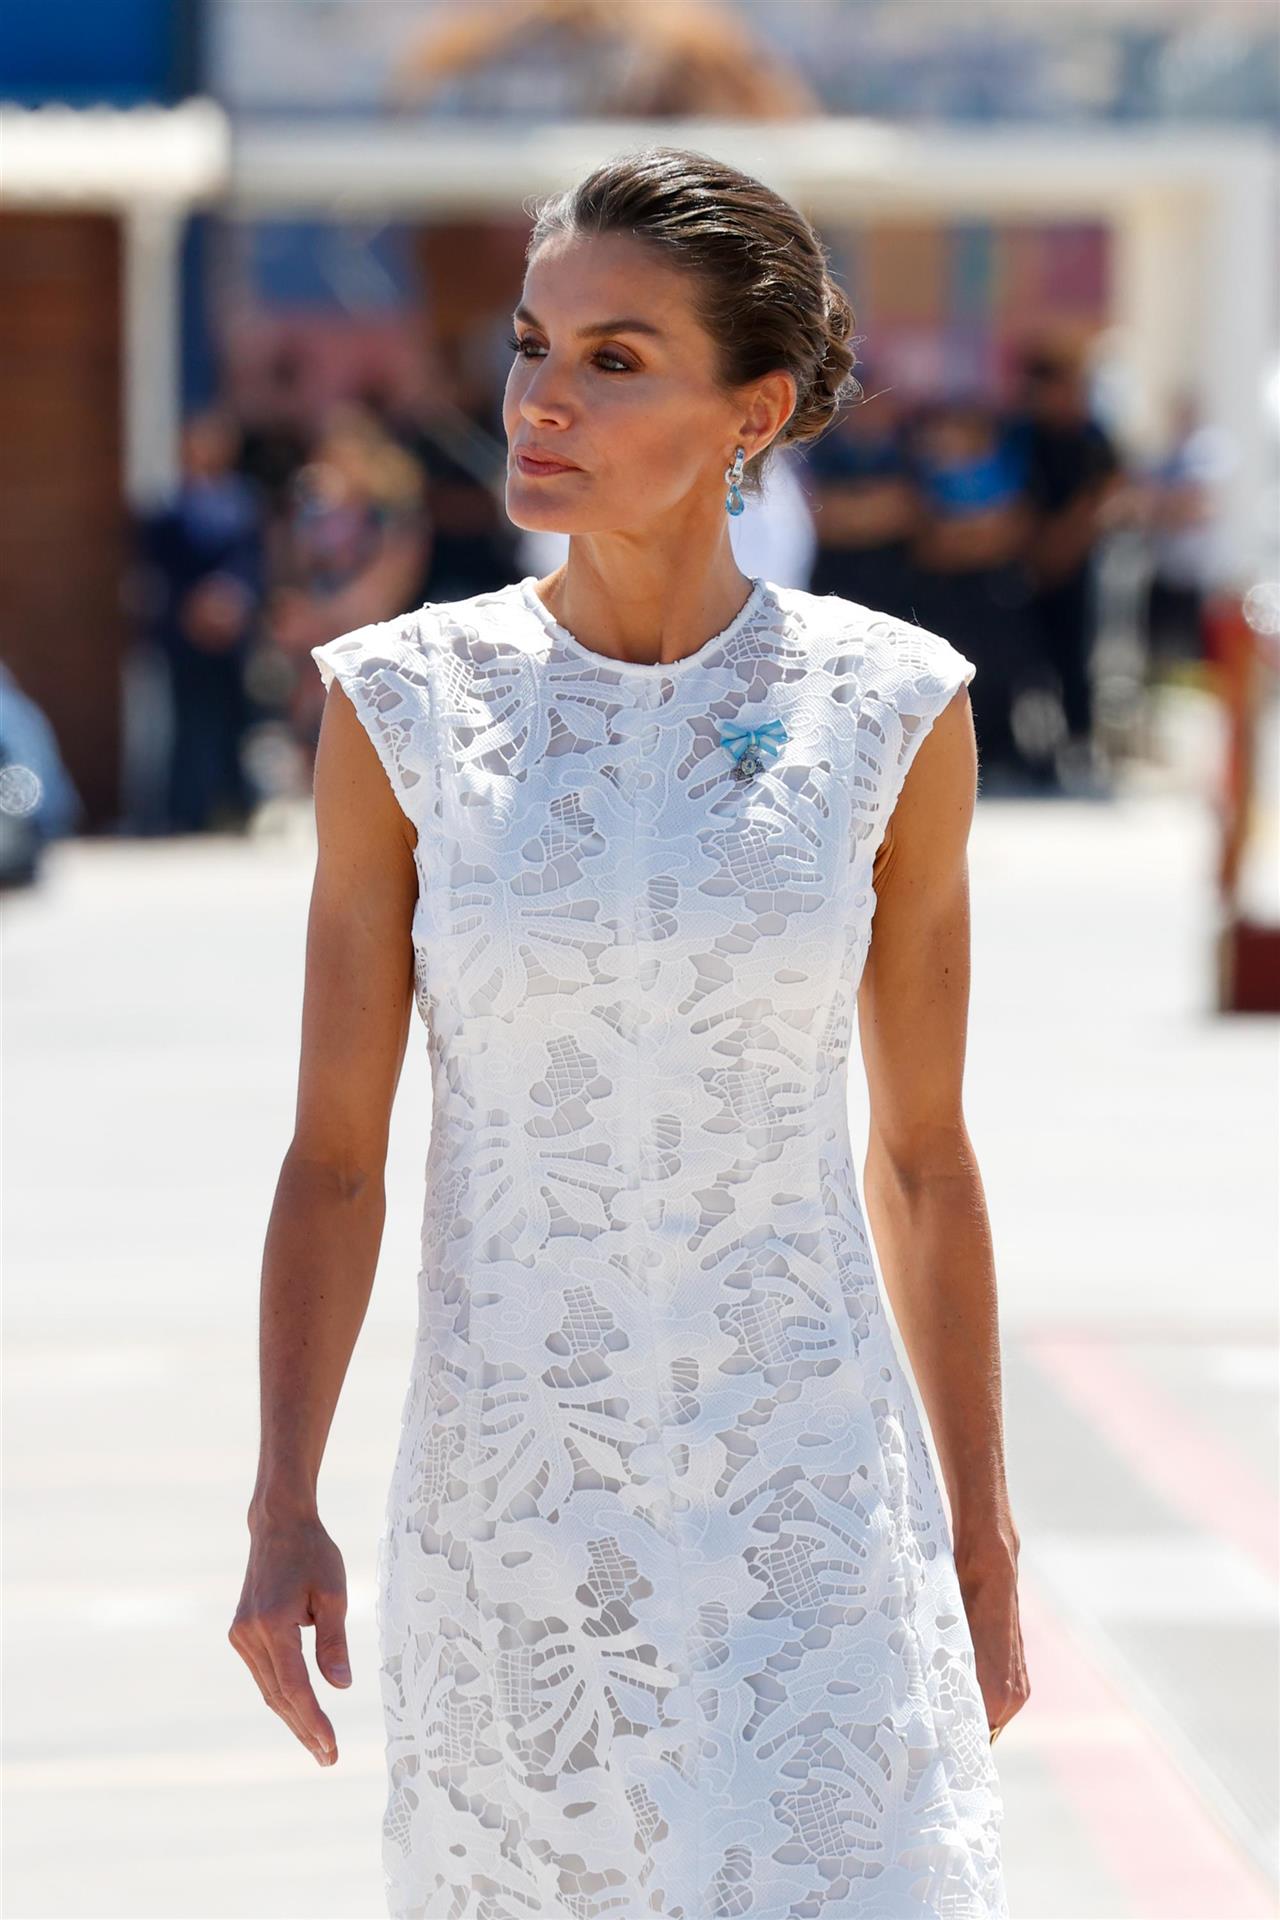 El vestido blanco de Sfera de Reina Letizia que ha roto Internet porque es precioso y perfecto